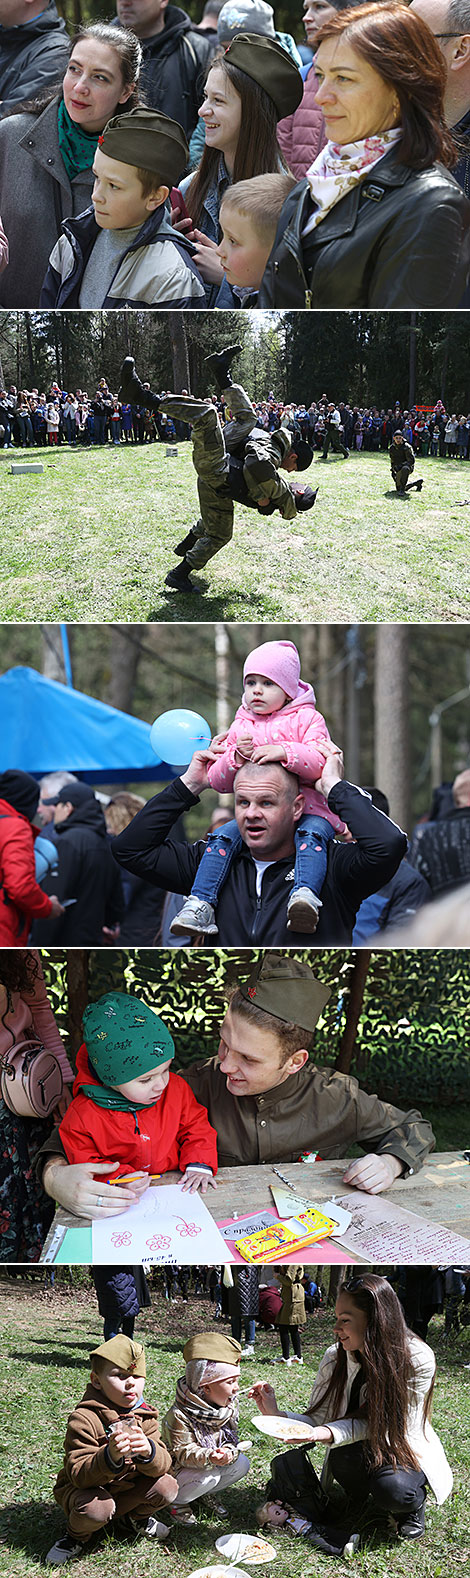 Festivities in Pechersk Park in Mogilev